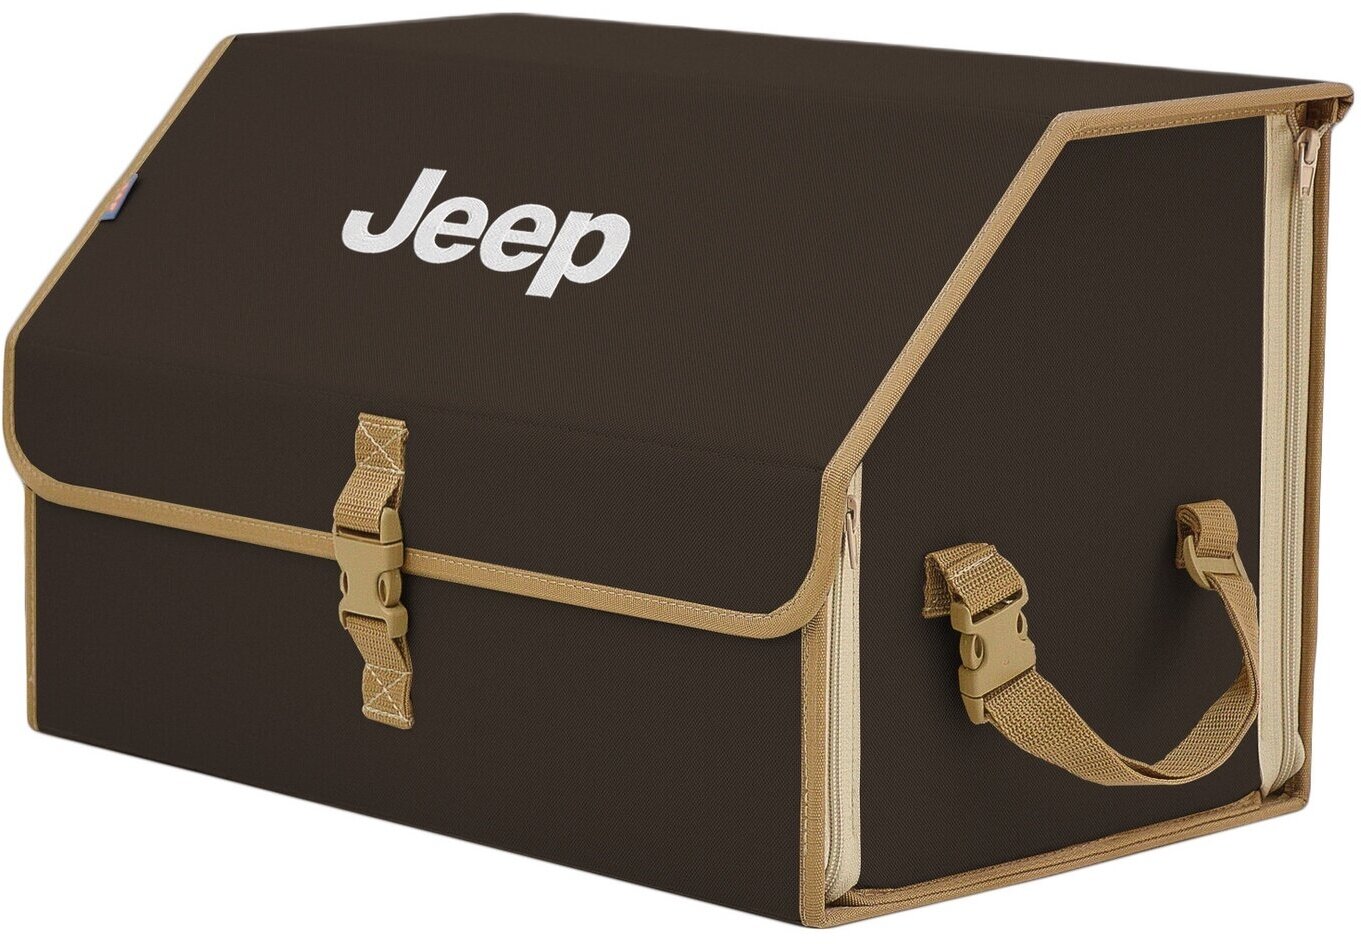 Органайзер-саквояж в багажник "Союз" (размер L). Цвет: коричневый с бежевой окантовкой и вышивкой Jeep (Джип).